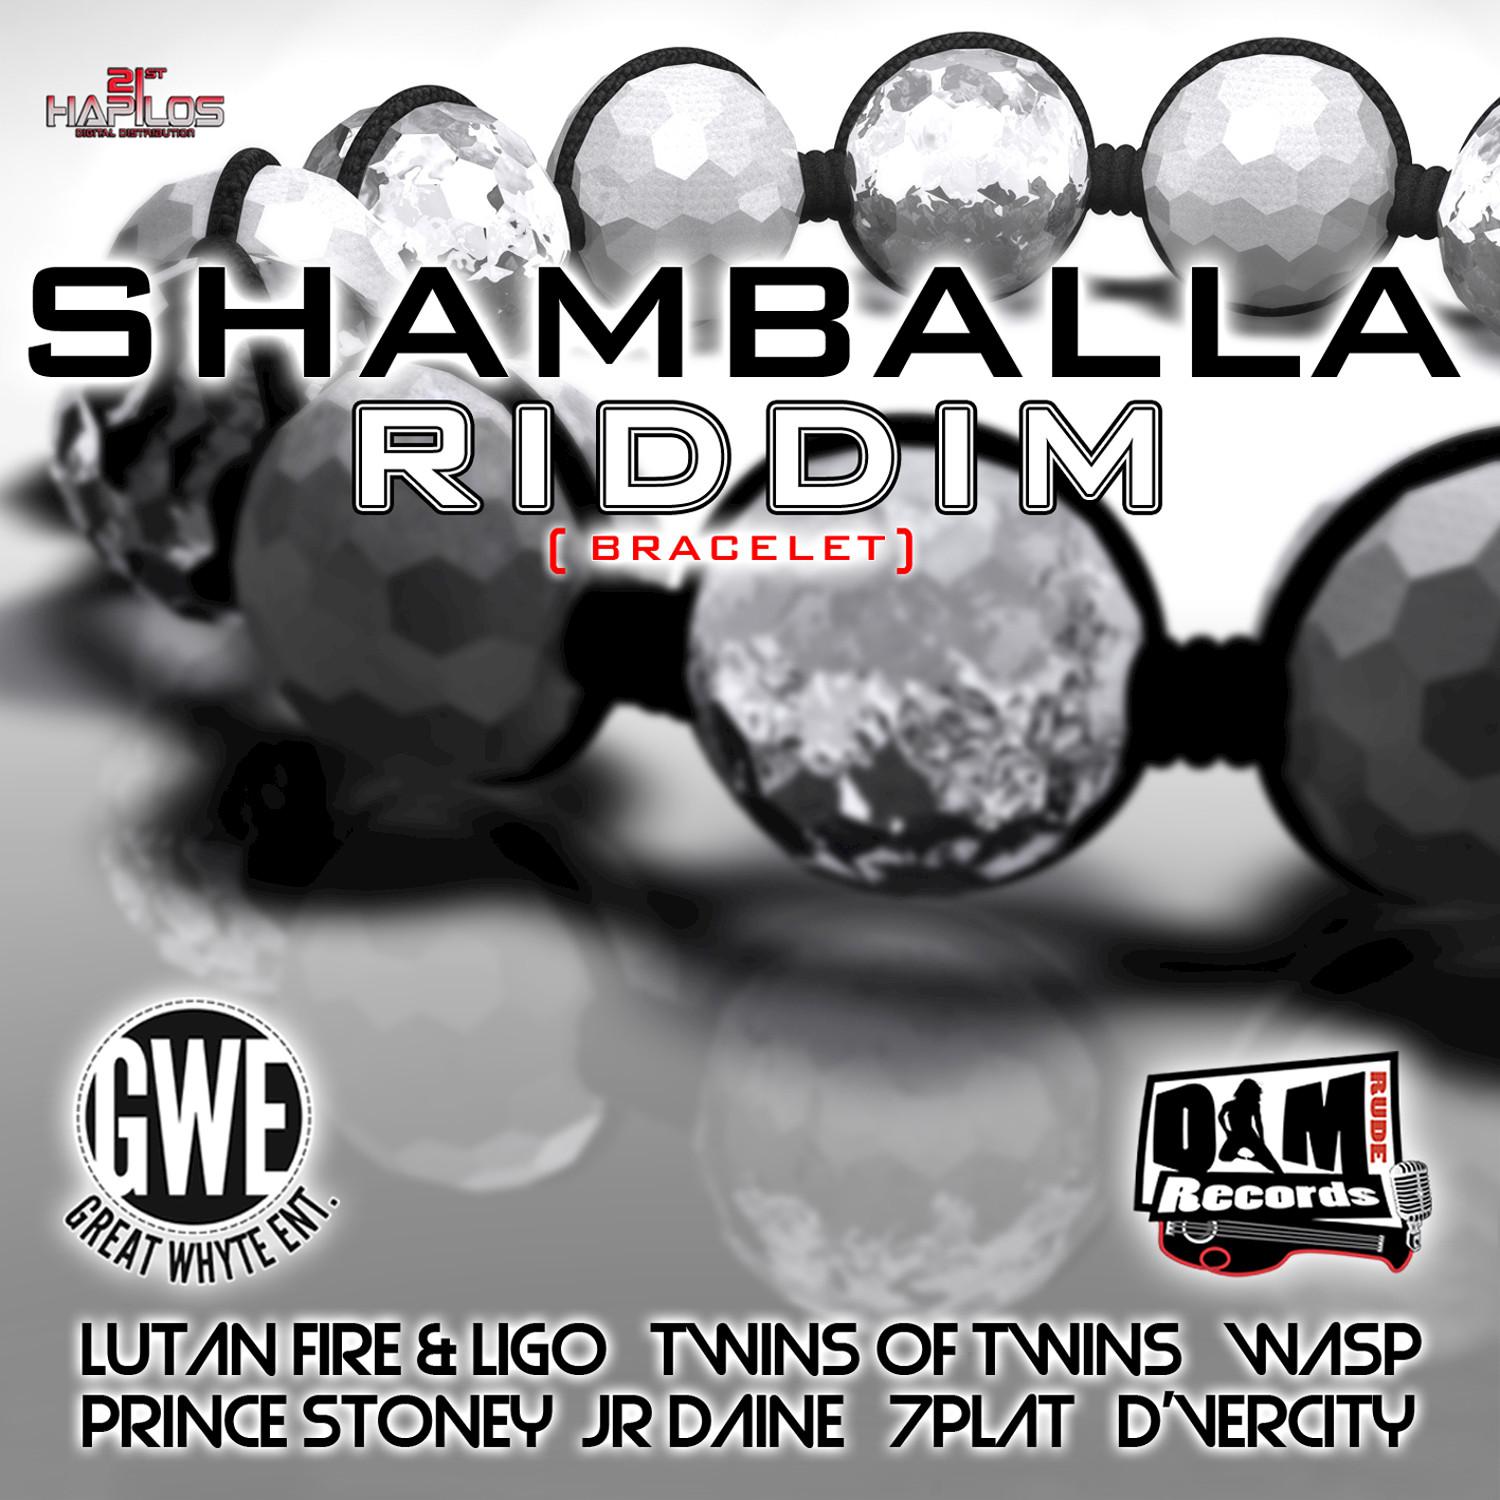 Shamballa Riddim - Bracelet